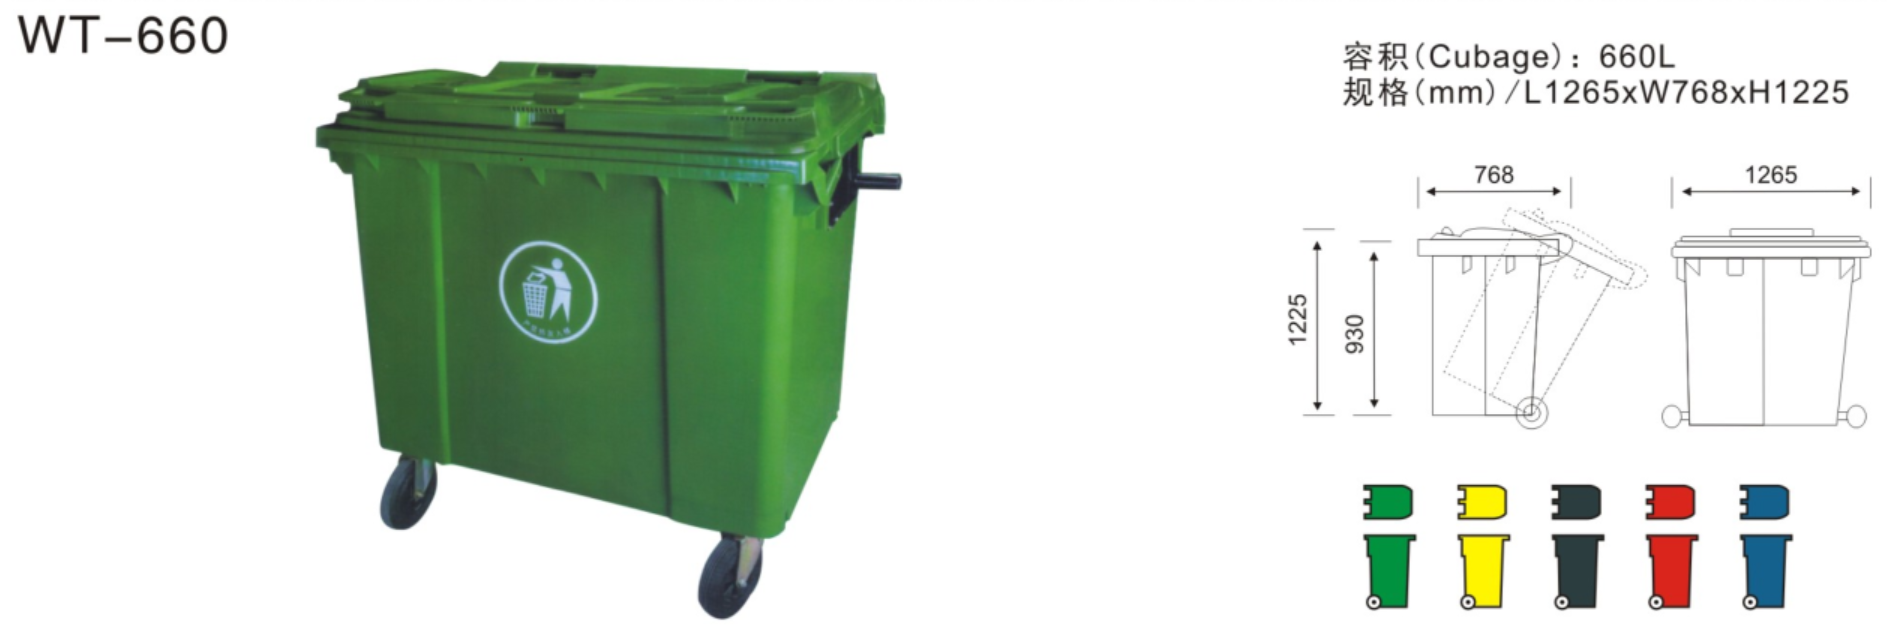 榆林660L塑料垃圾桶